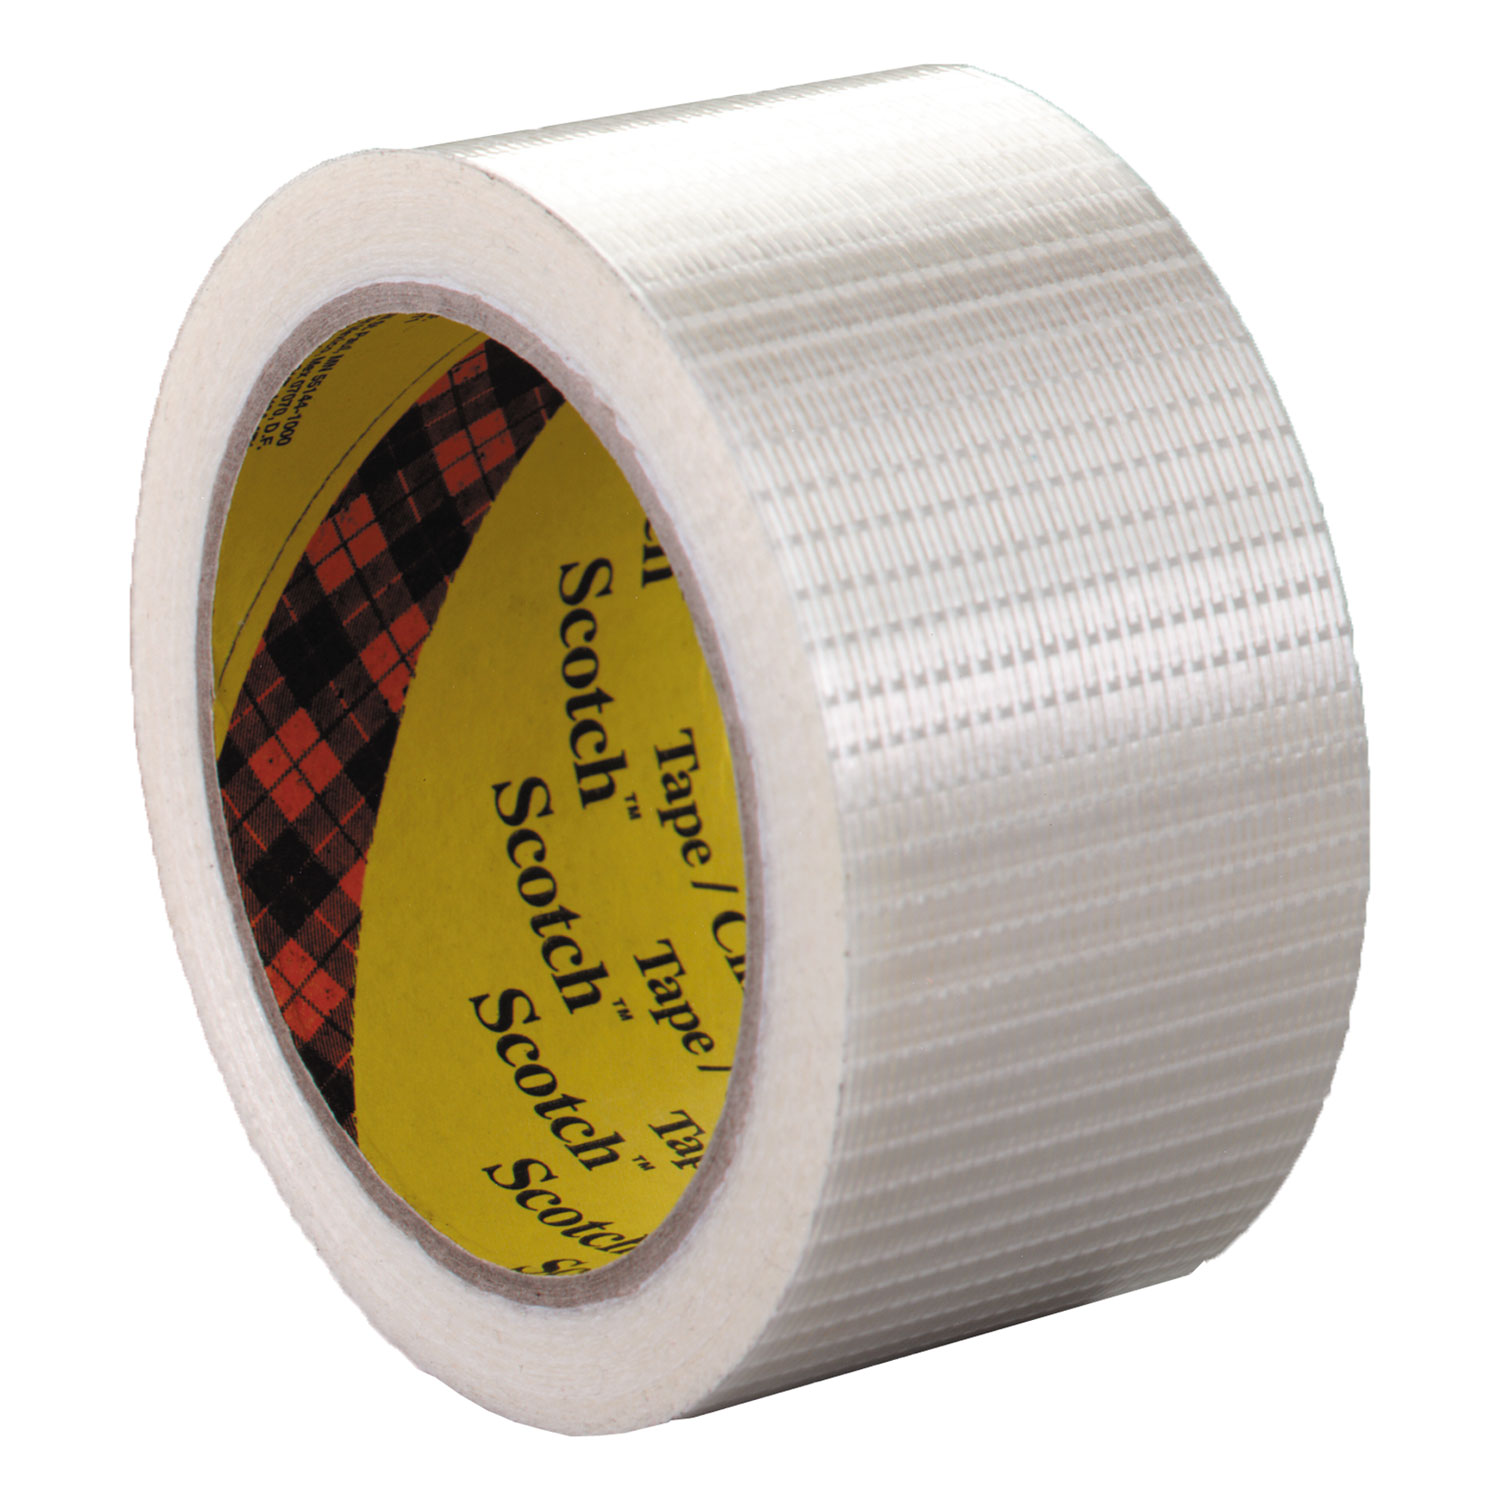  Scotch 8959 Bi-Directional Filament Tape, 3 Core, 50 mm x 50 m, Clear (MMM8959) 